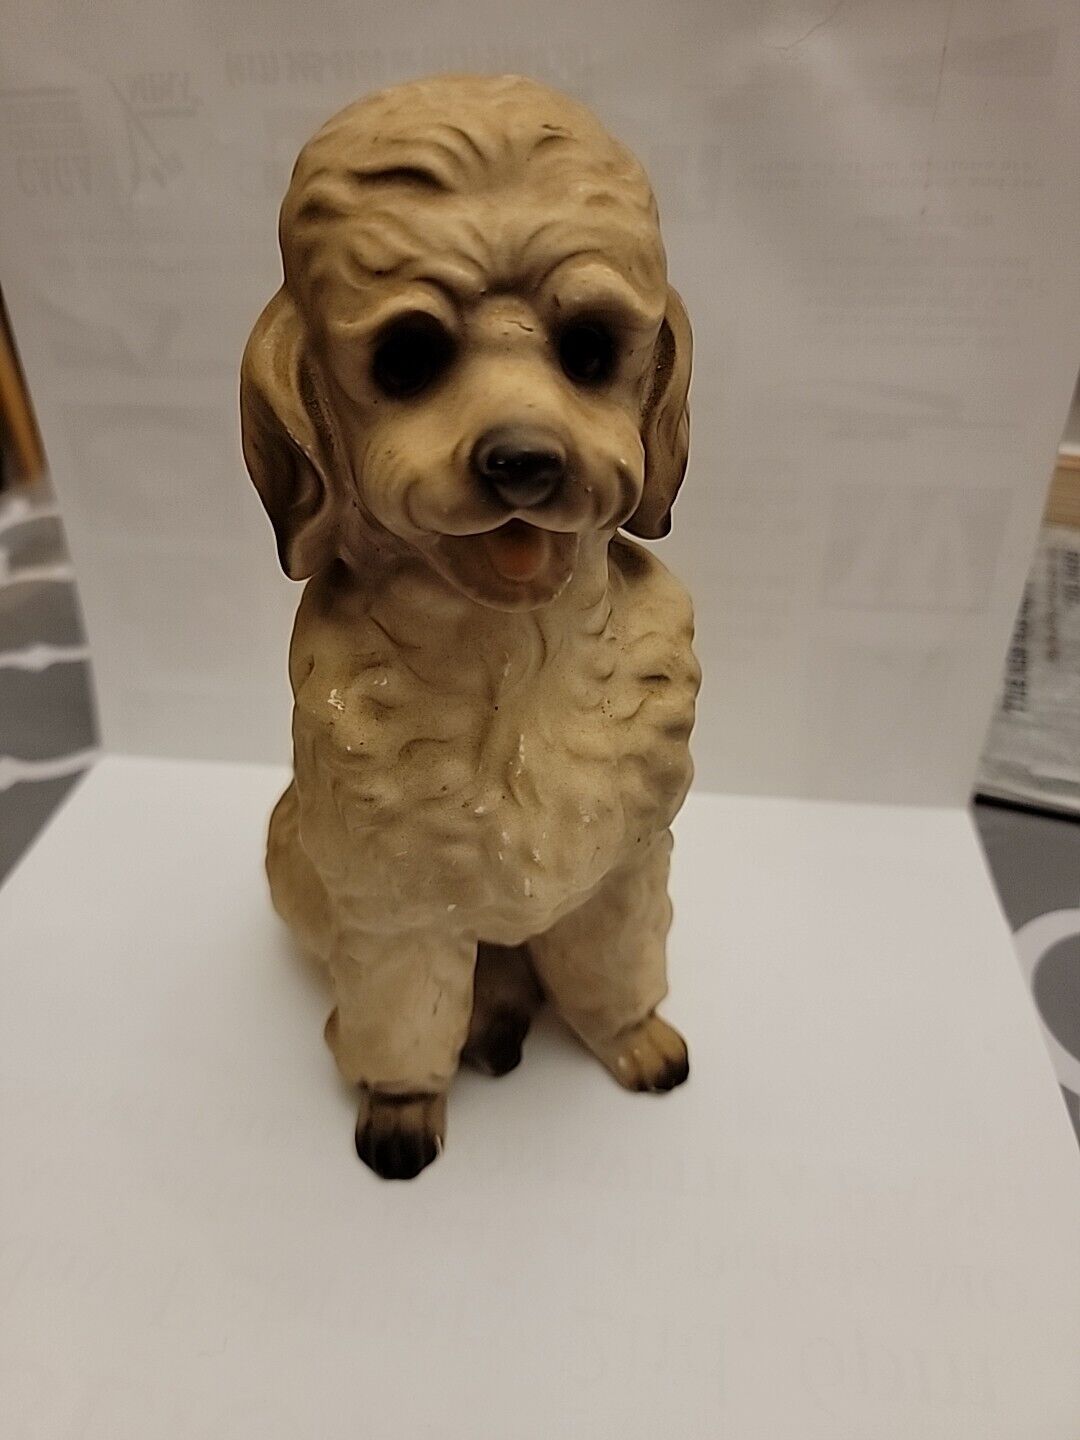 Vintage Porcelain Sitting Up Poodle Dog Figurine From Japan